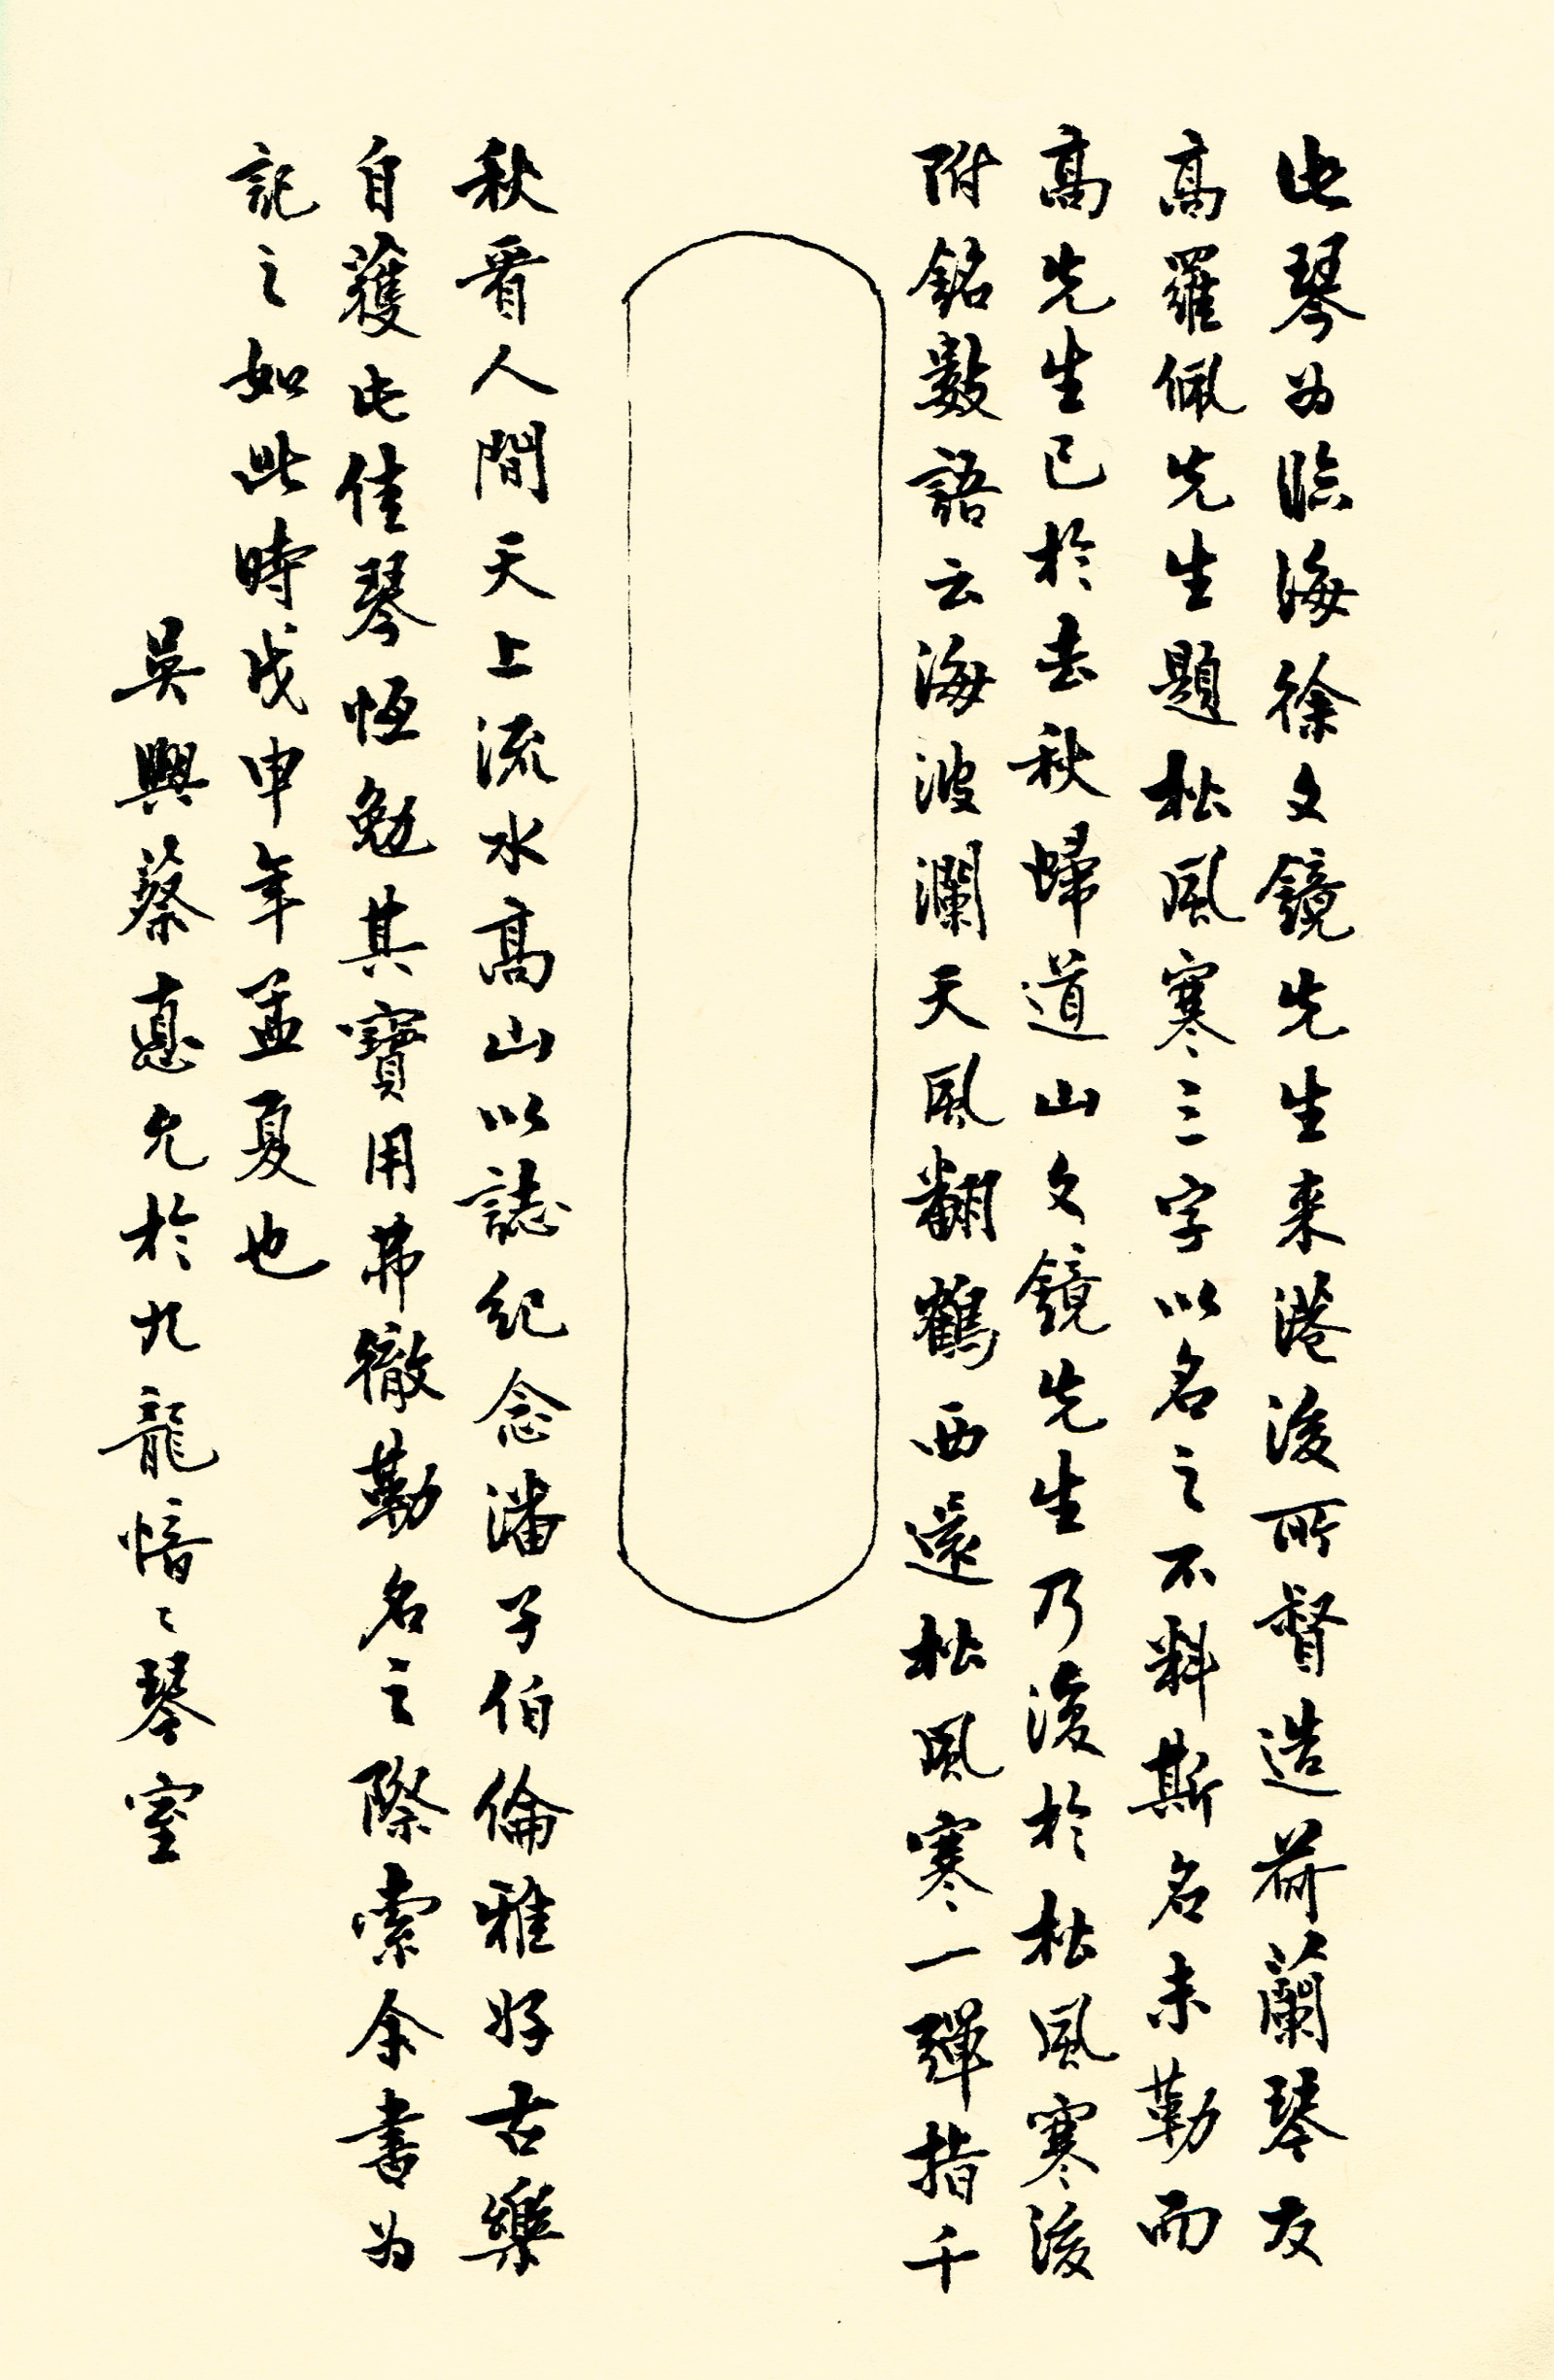 Qin destiné à Van Gulik, 1968